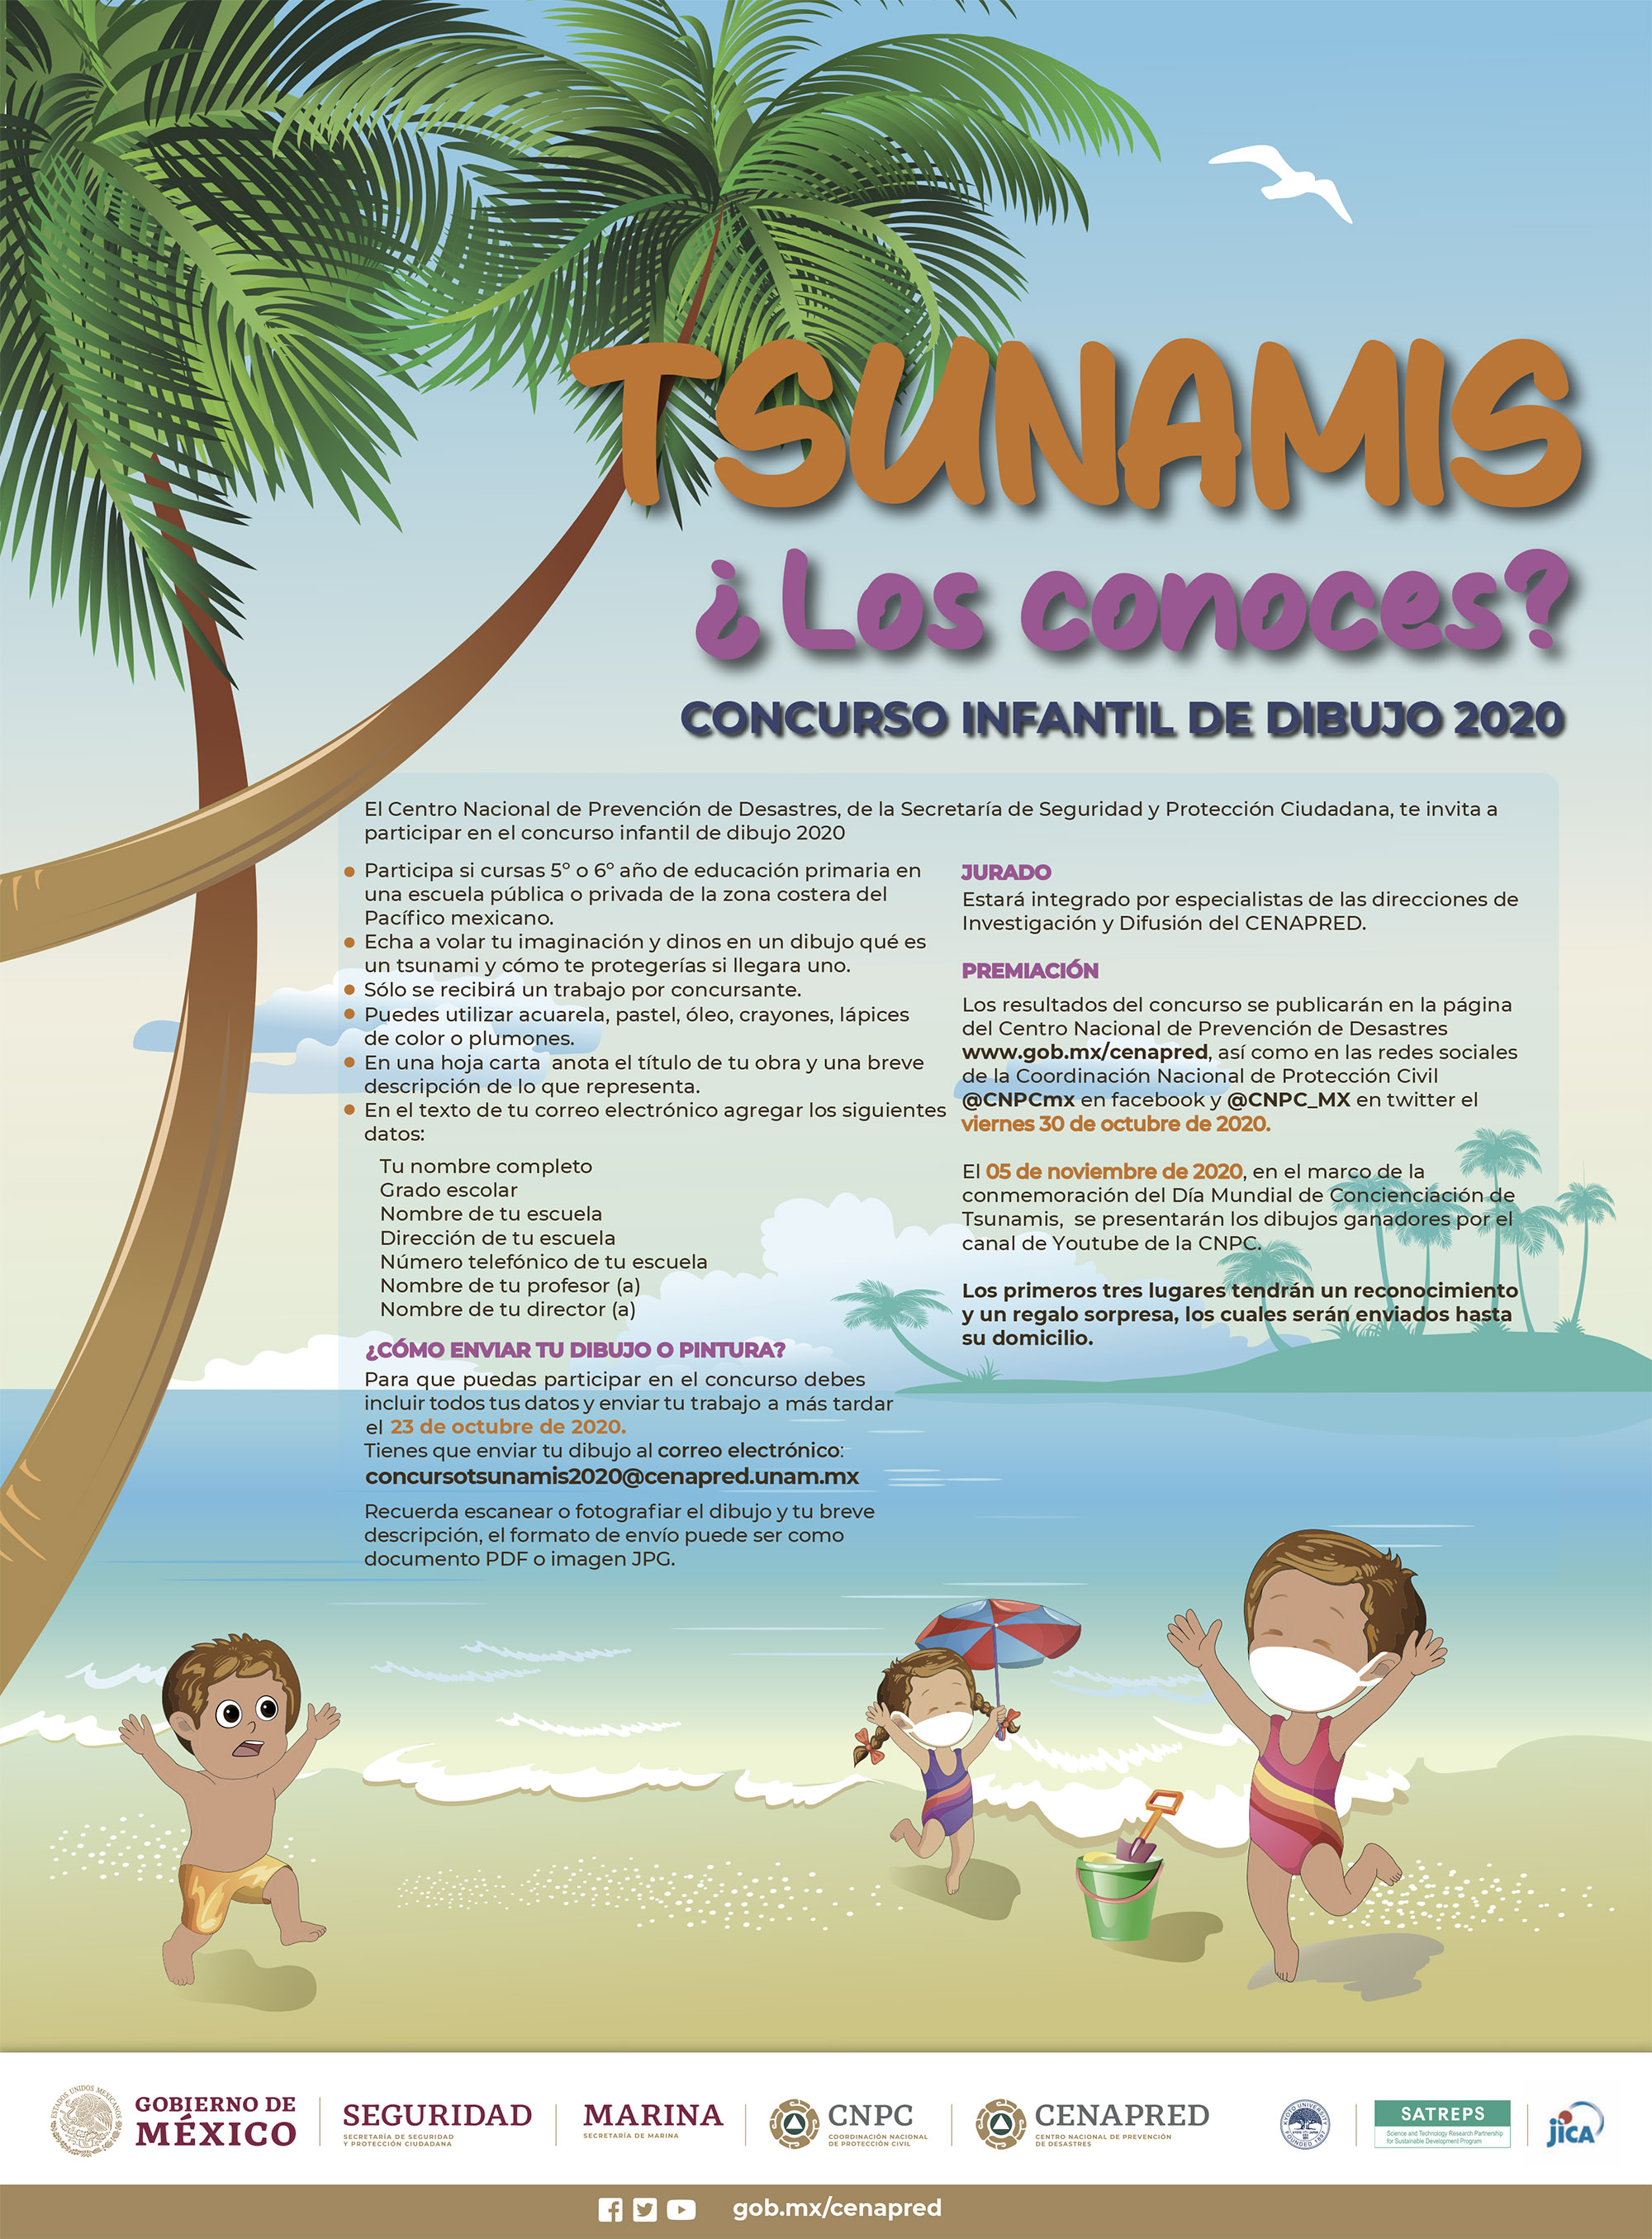 Concurso de Dibujo Infantil: Tsunamis ¿Los conoces? | Centro Nacional de  Prevención de Desastres | Gobierno 